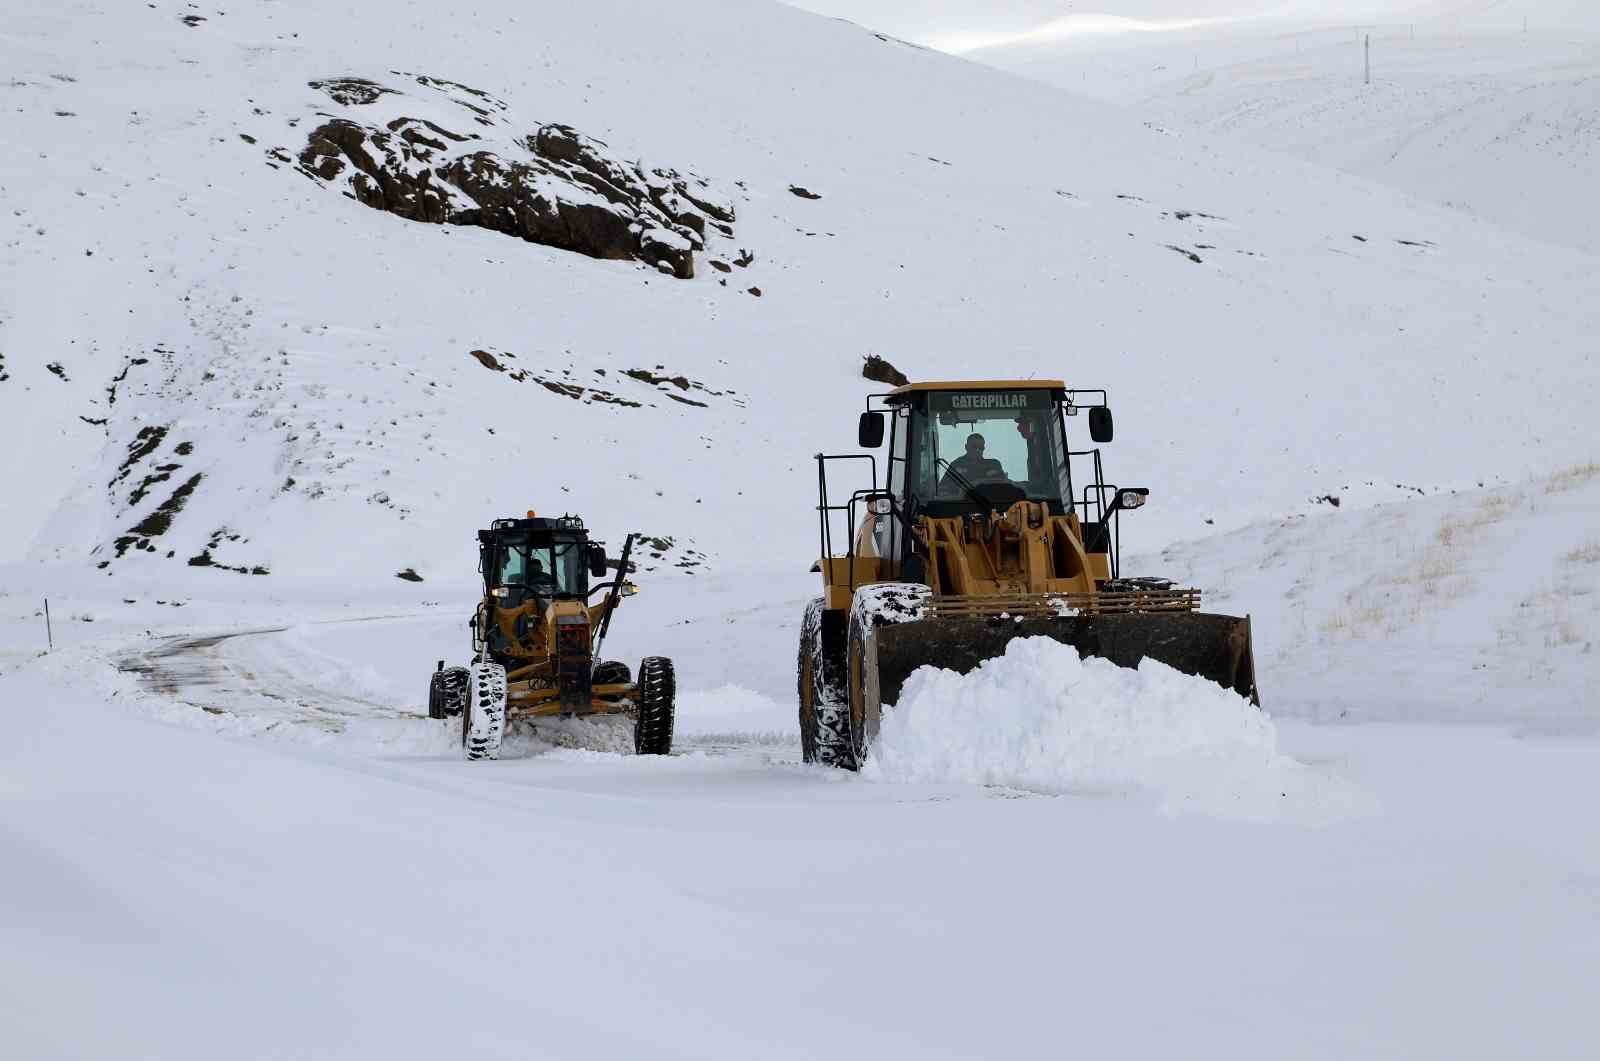 Van’da 600 personelle karla mücadele çalışması